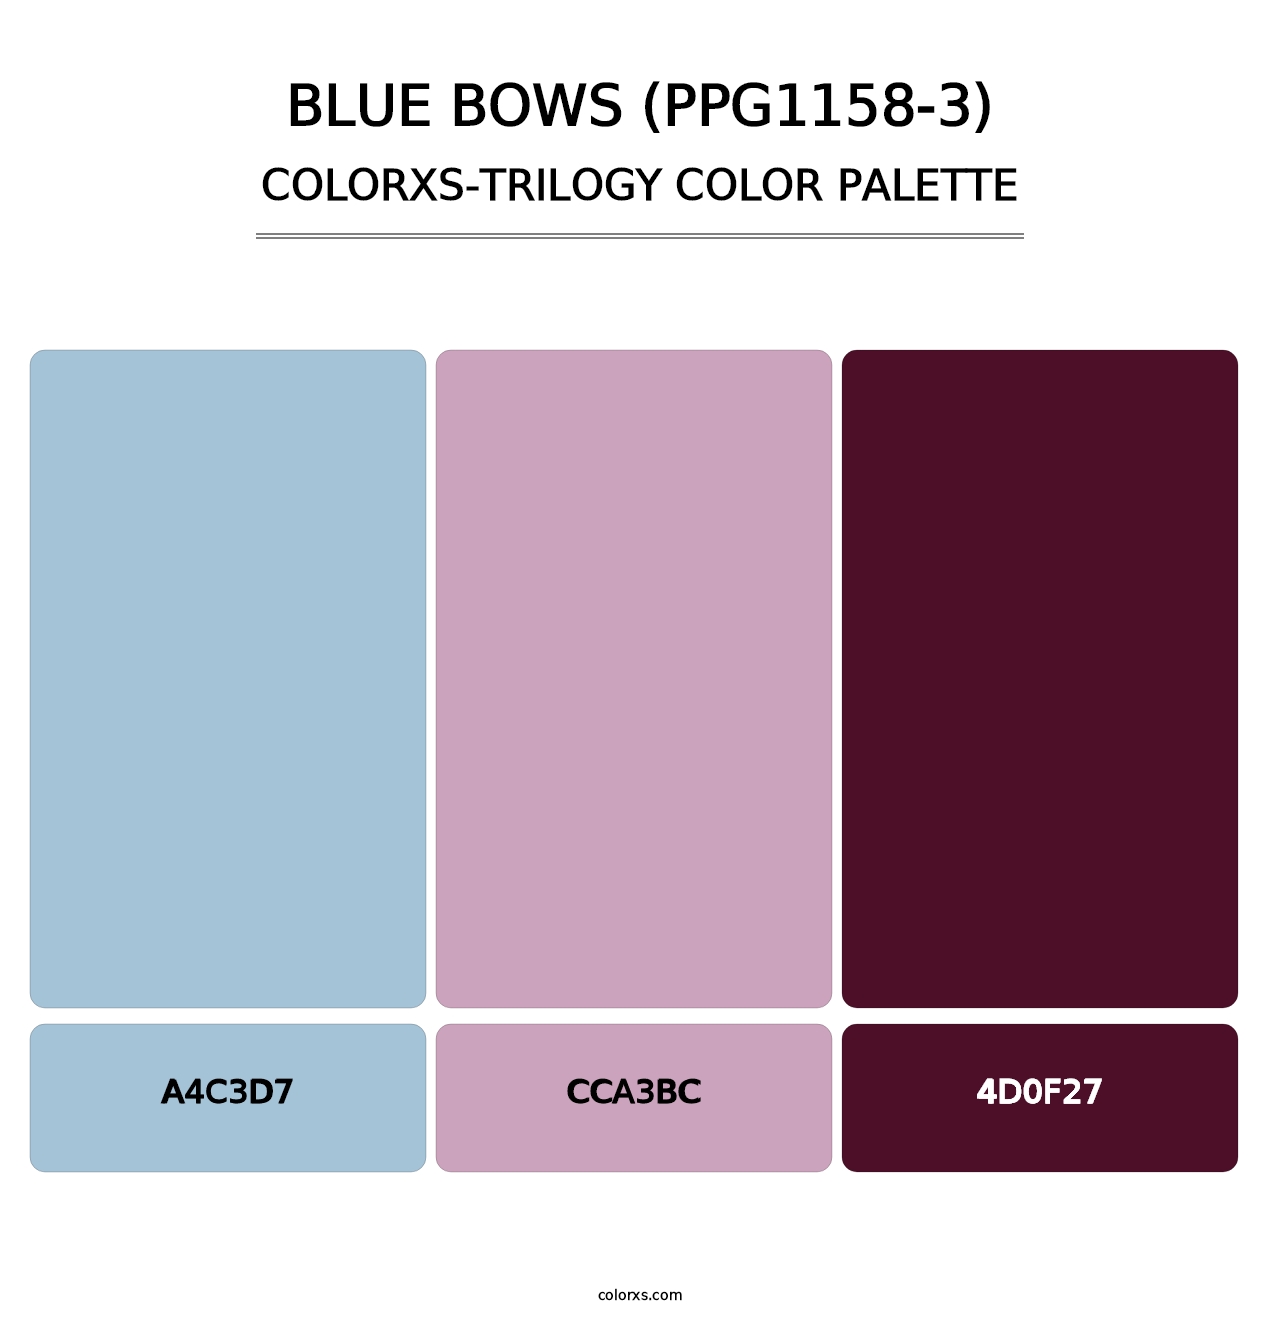 Blue Bows (PPG1158-3) - Colorxs Trilogy Palette